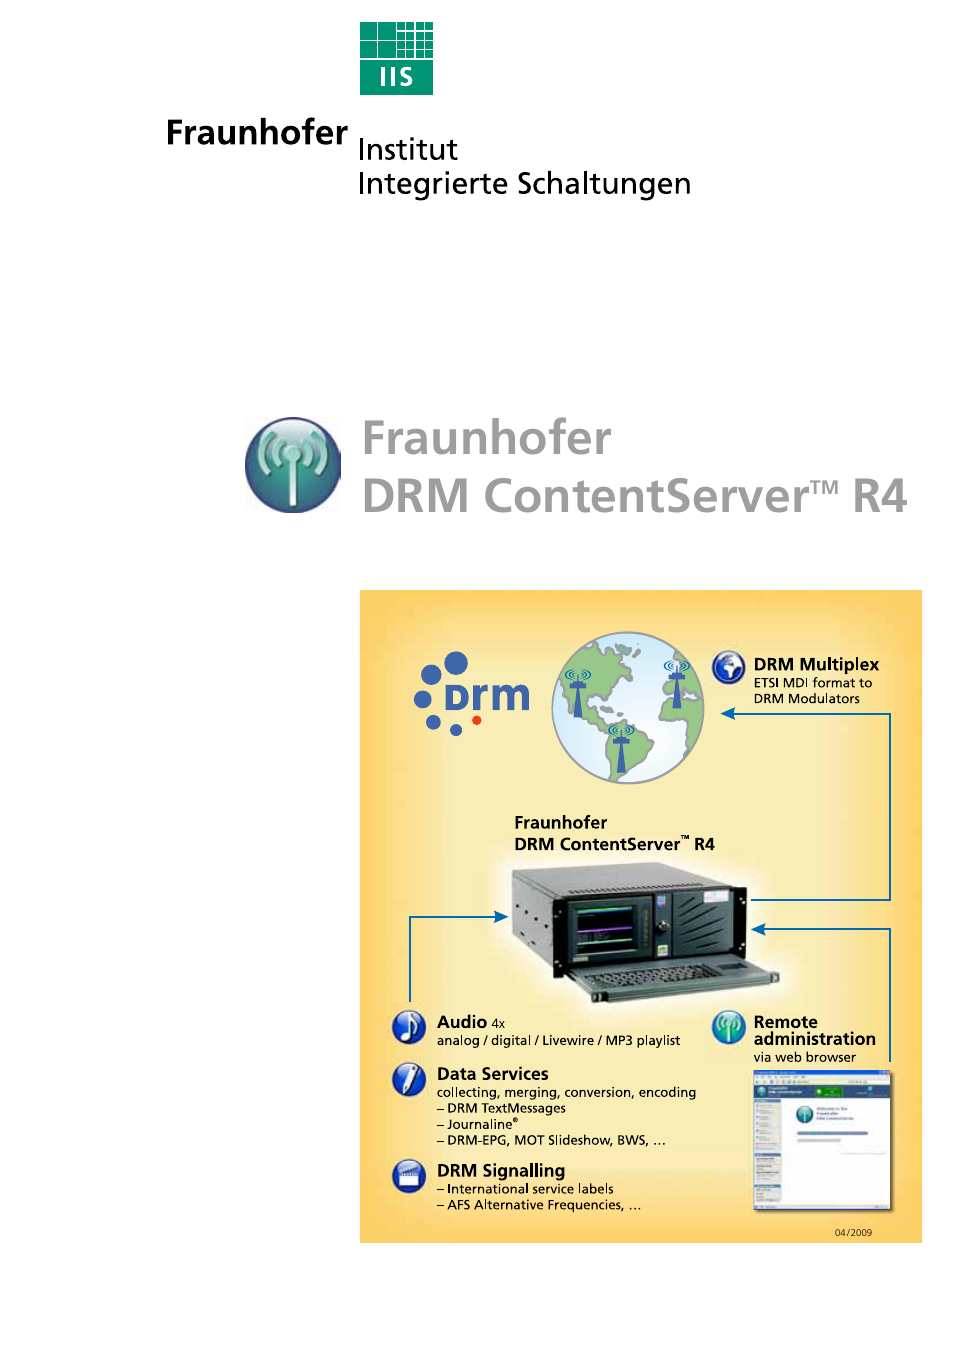 Fraunhofer DRM ContentServer R4